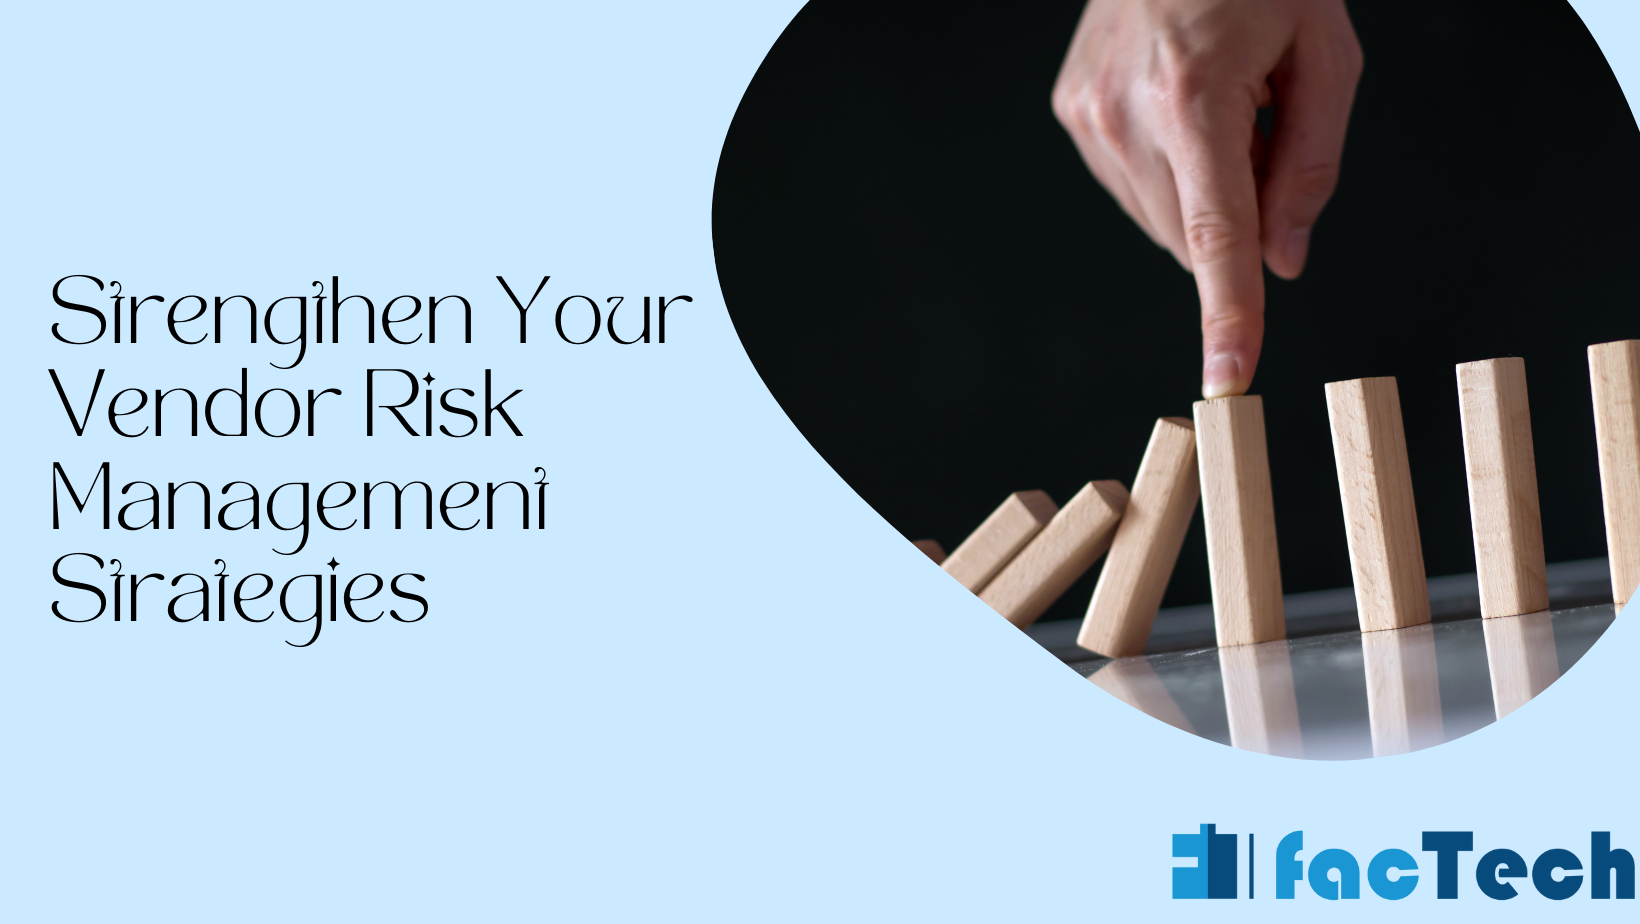 Strengthen Your Vendor Risk Management Strategies